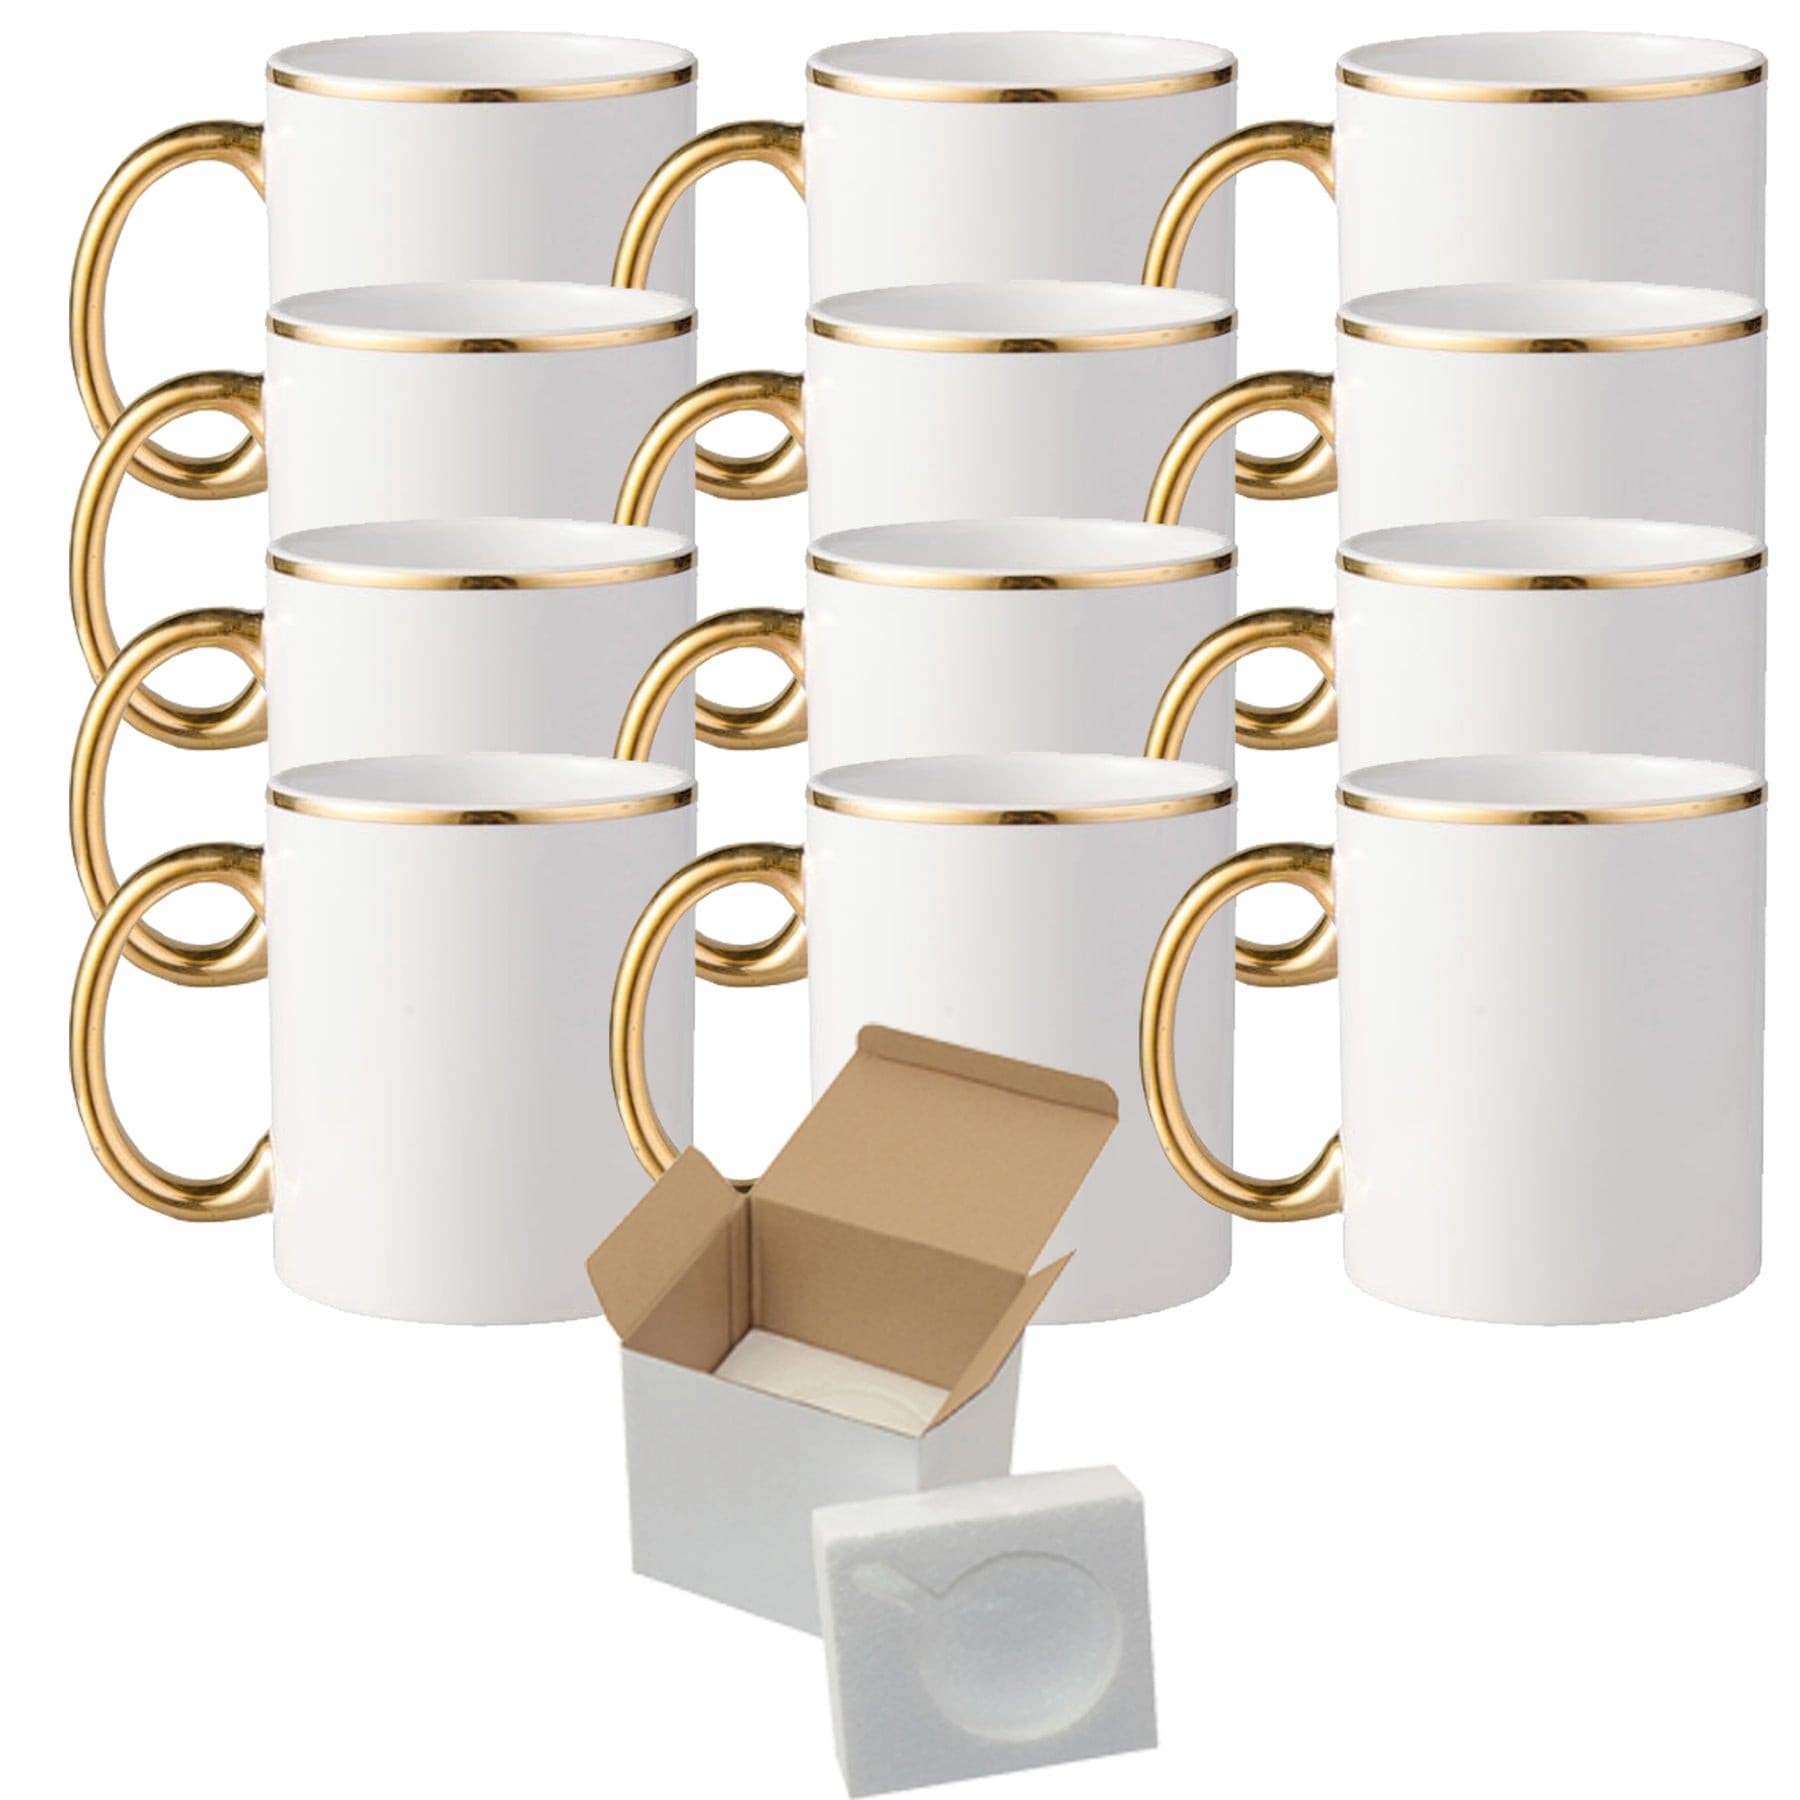 creative blank sublimation mugs 15 oz